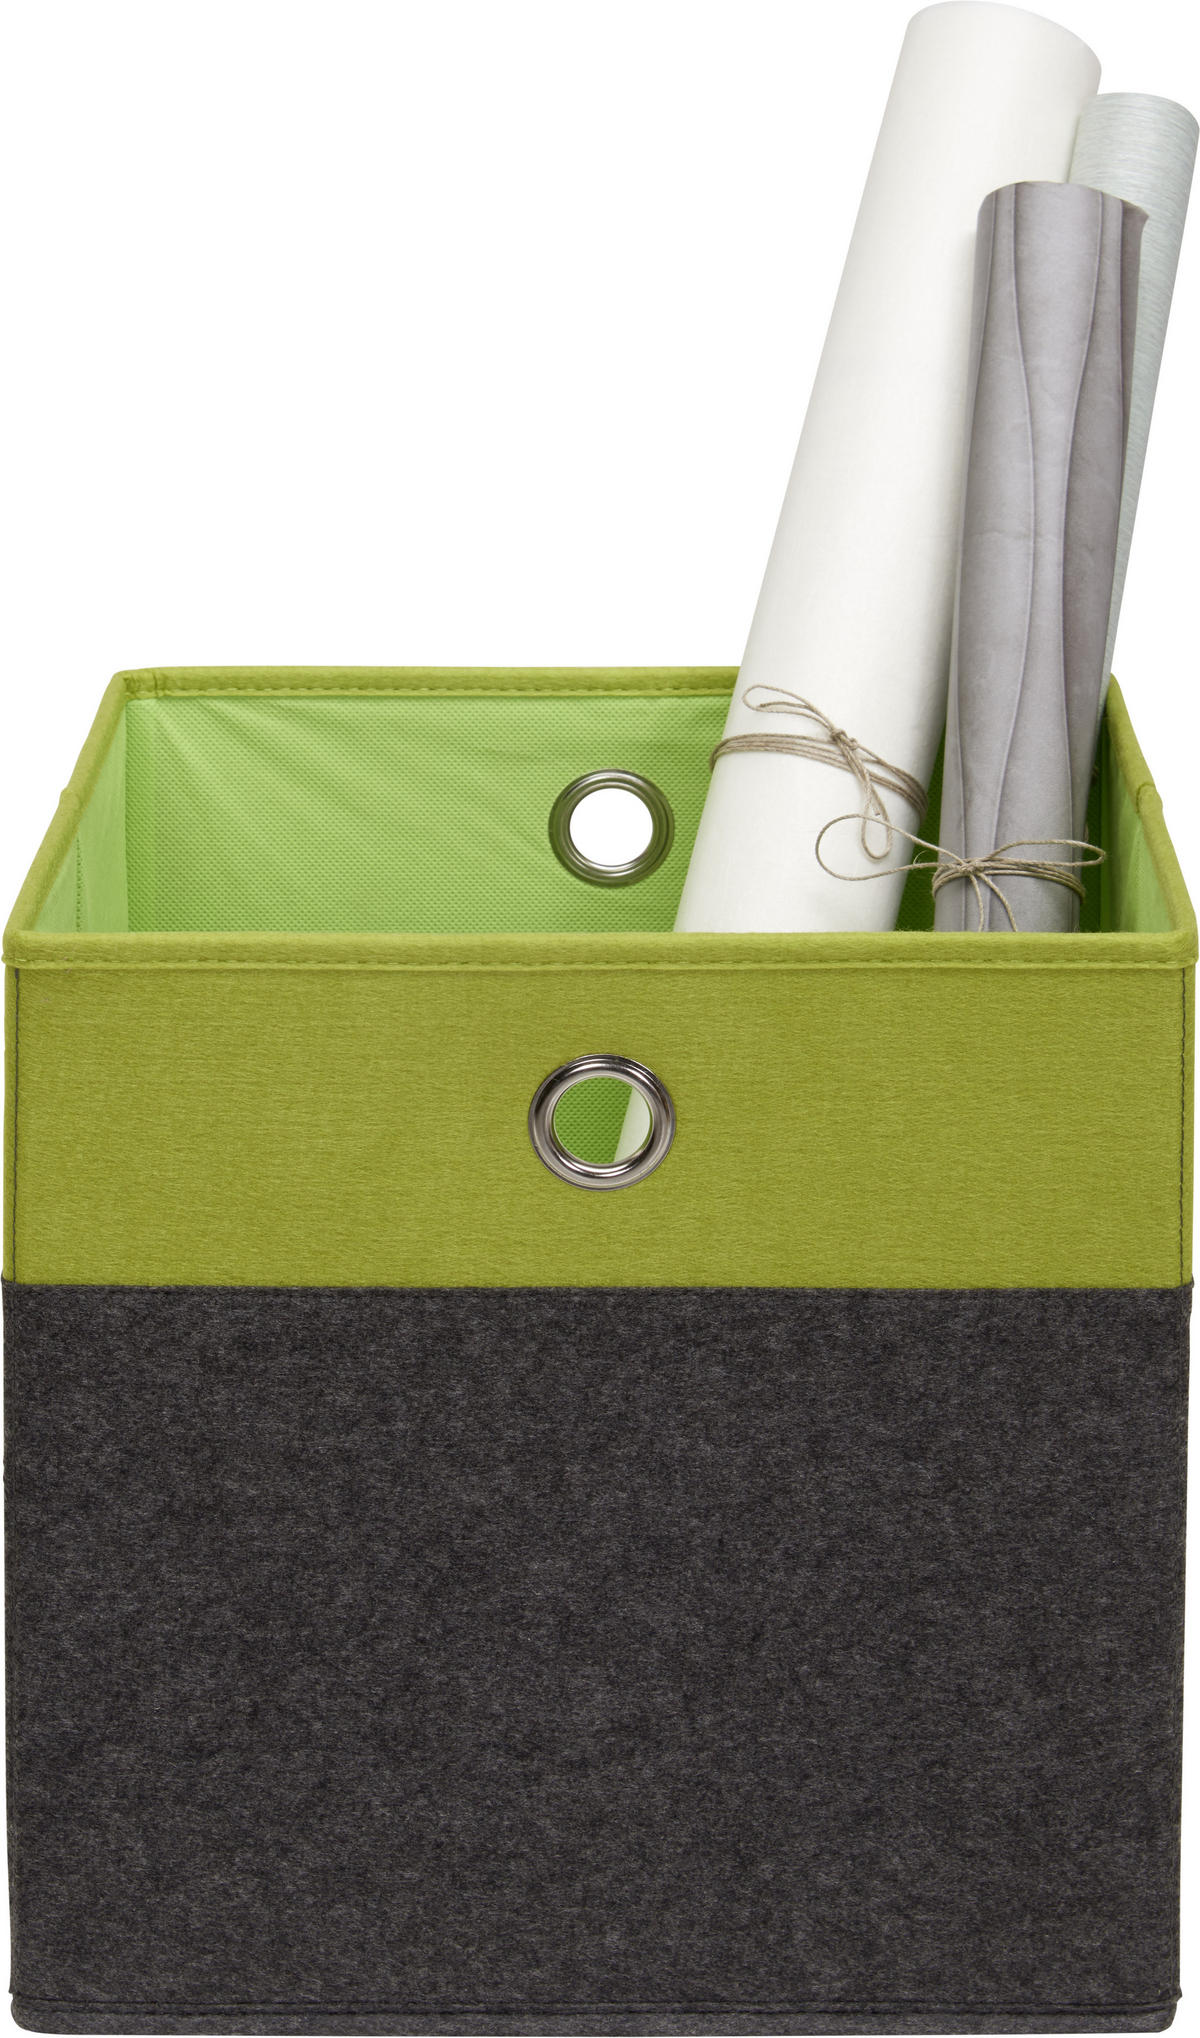 Faltbox 600x400x320 mm in grün online bestellen